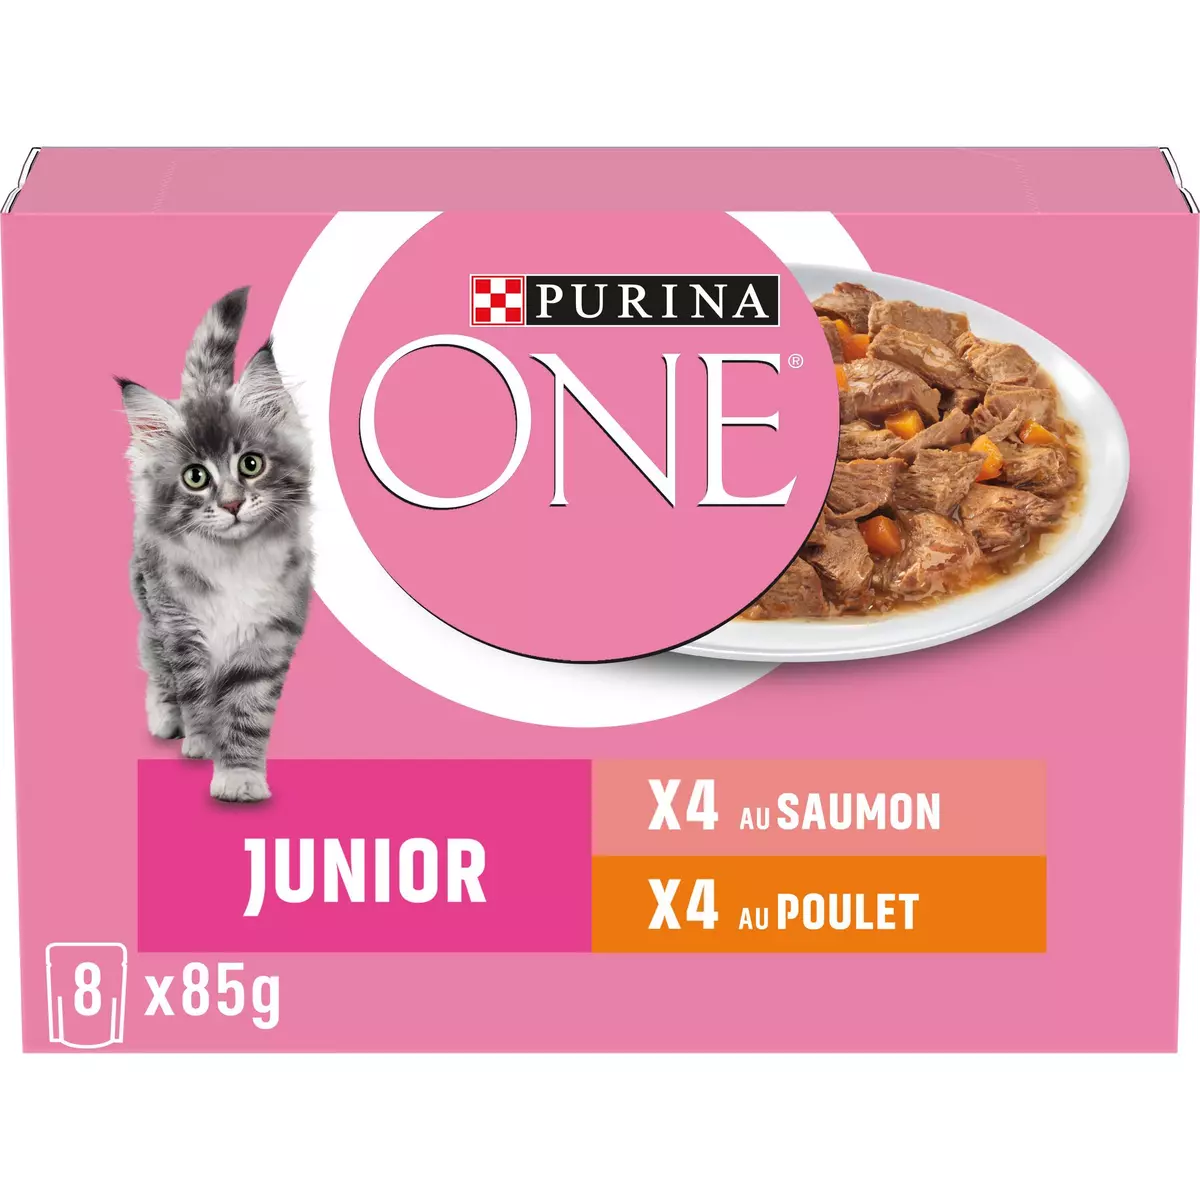 Purina ONE Croquettes chat Junior riche en poulet et céréales complètes 6 x  1,5 kg